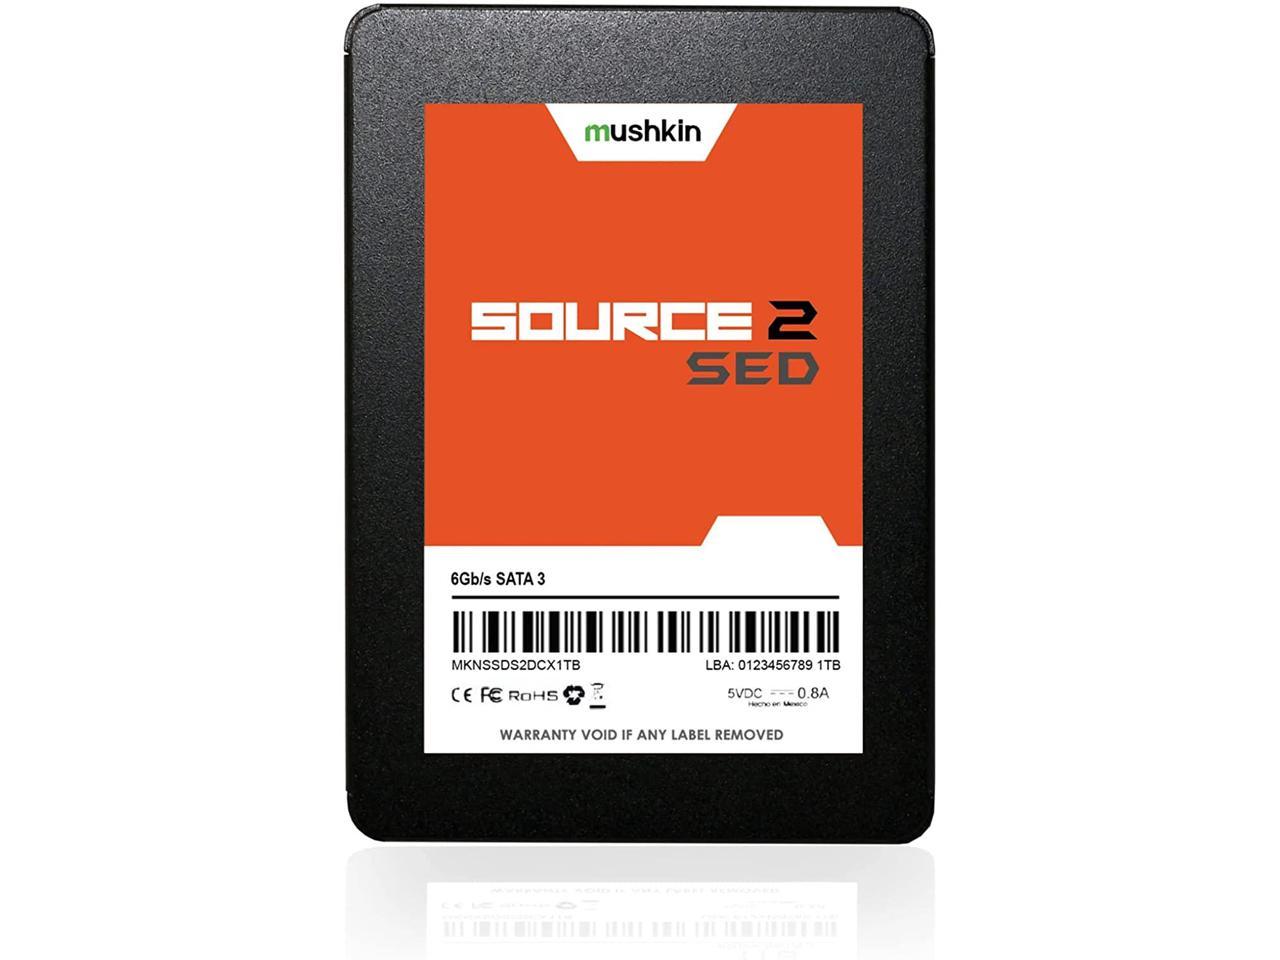 Mushkin Source 2 SED 2.5" SATA III 7mm SSD - Model -MKNSSD256GB